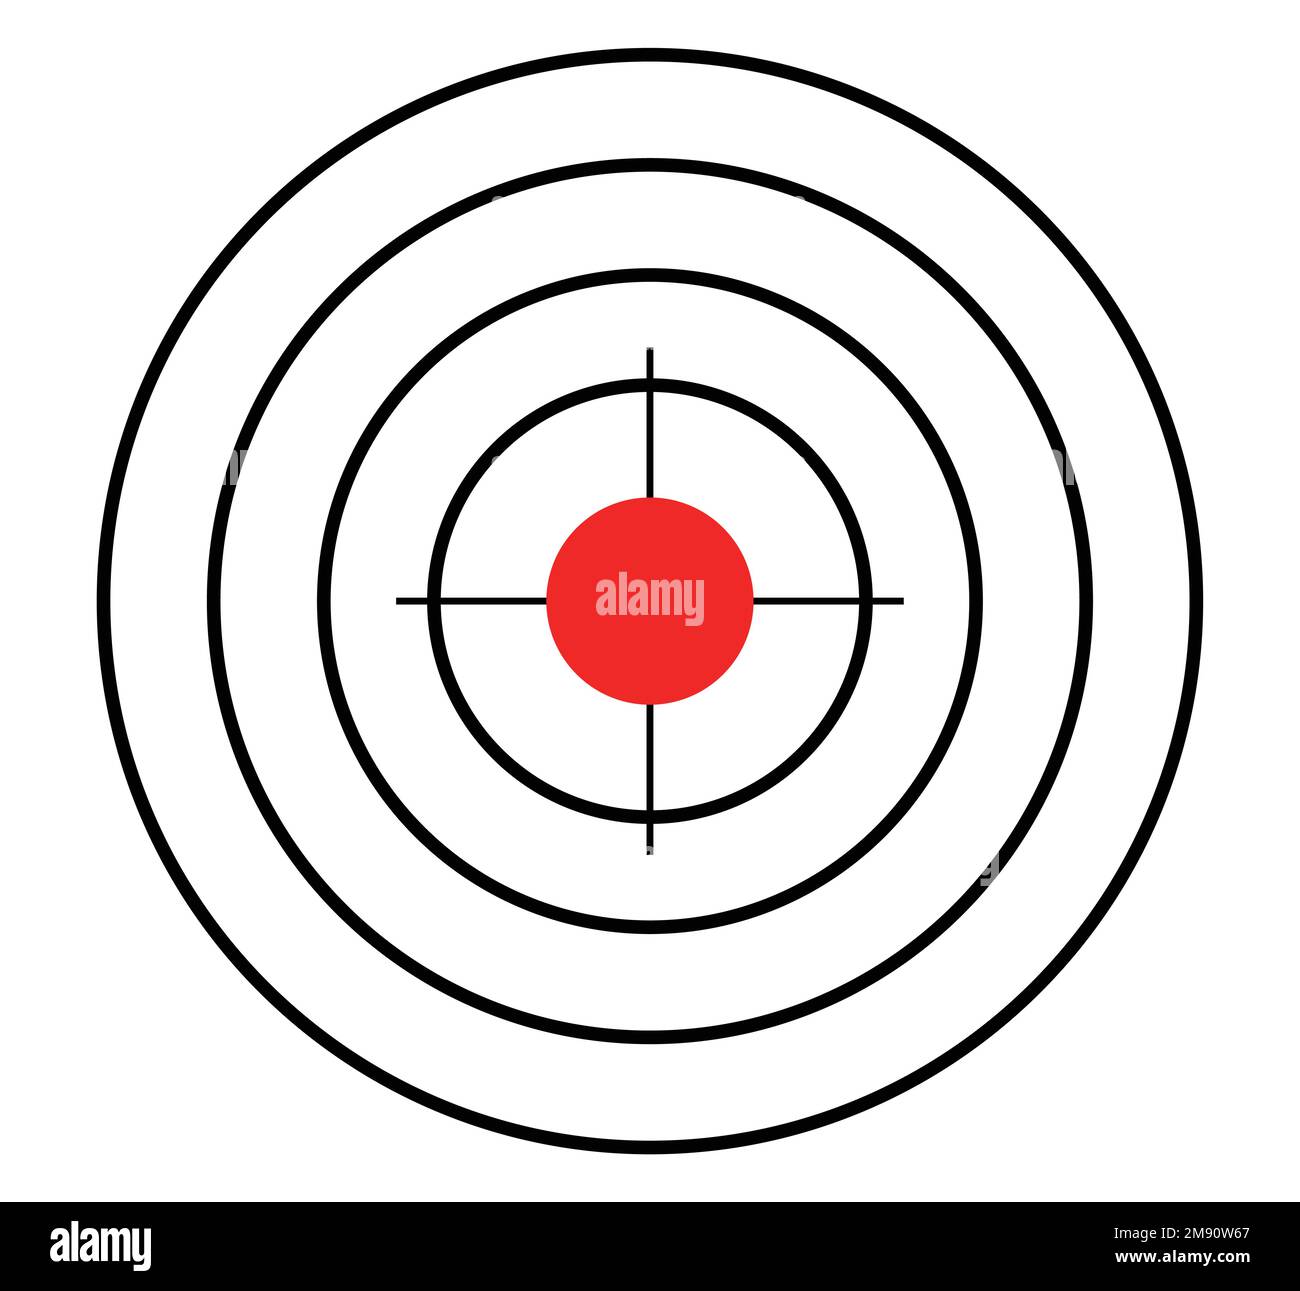 Rundes Ziel mit rotem Punkt in der Mitte Stock Vektor